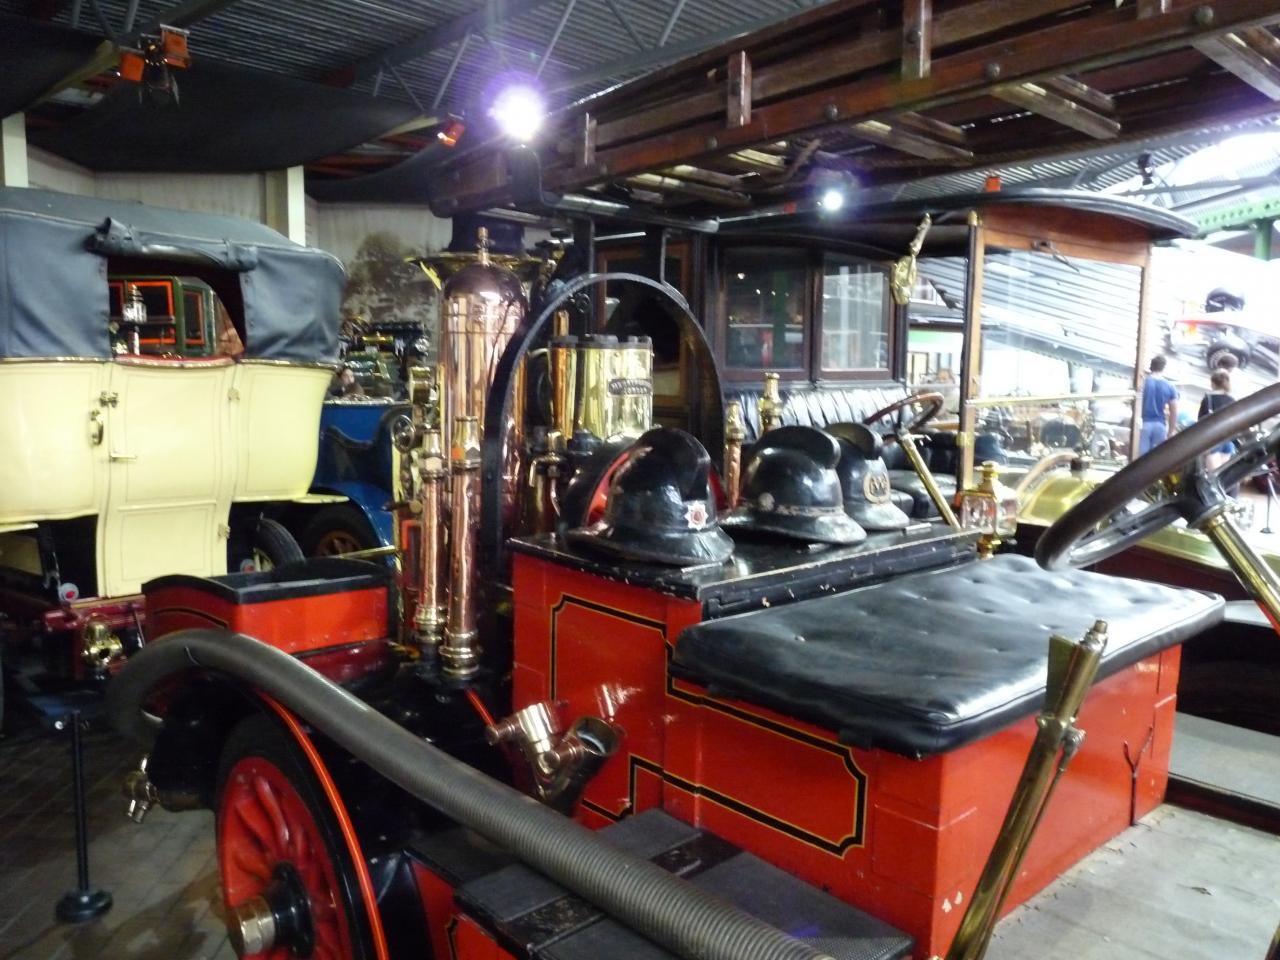 Motor museum Beaulieu,